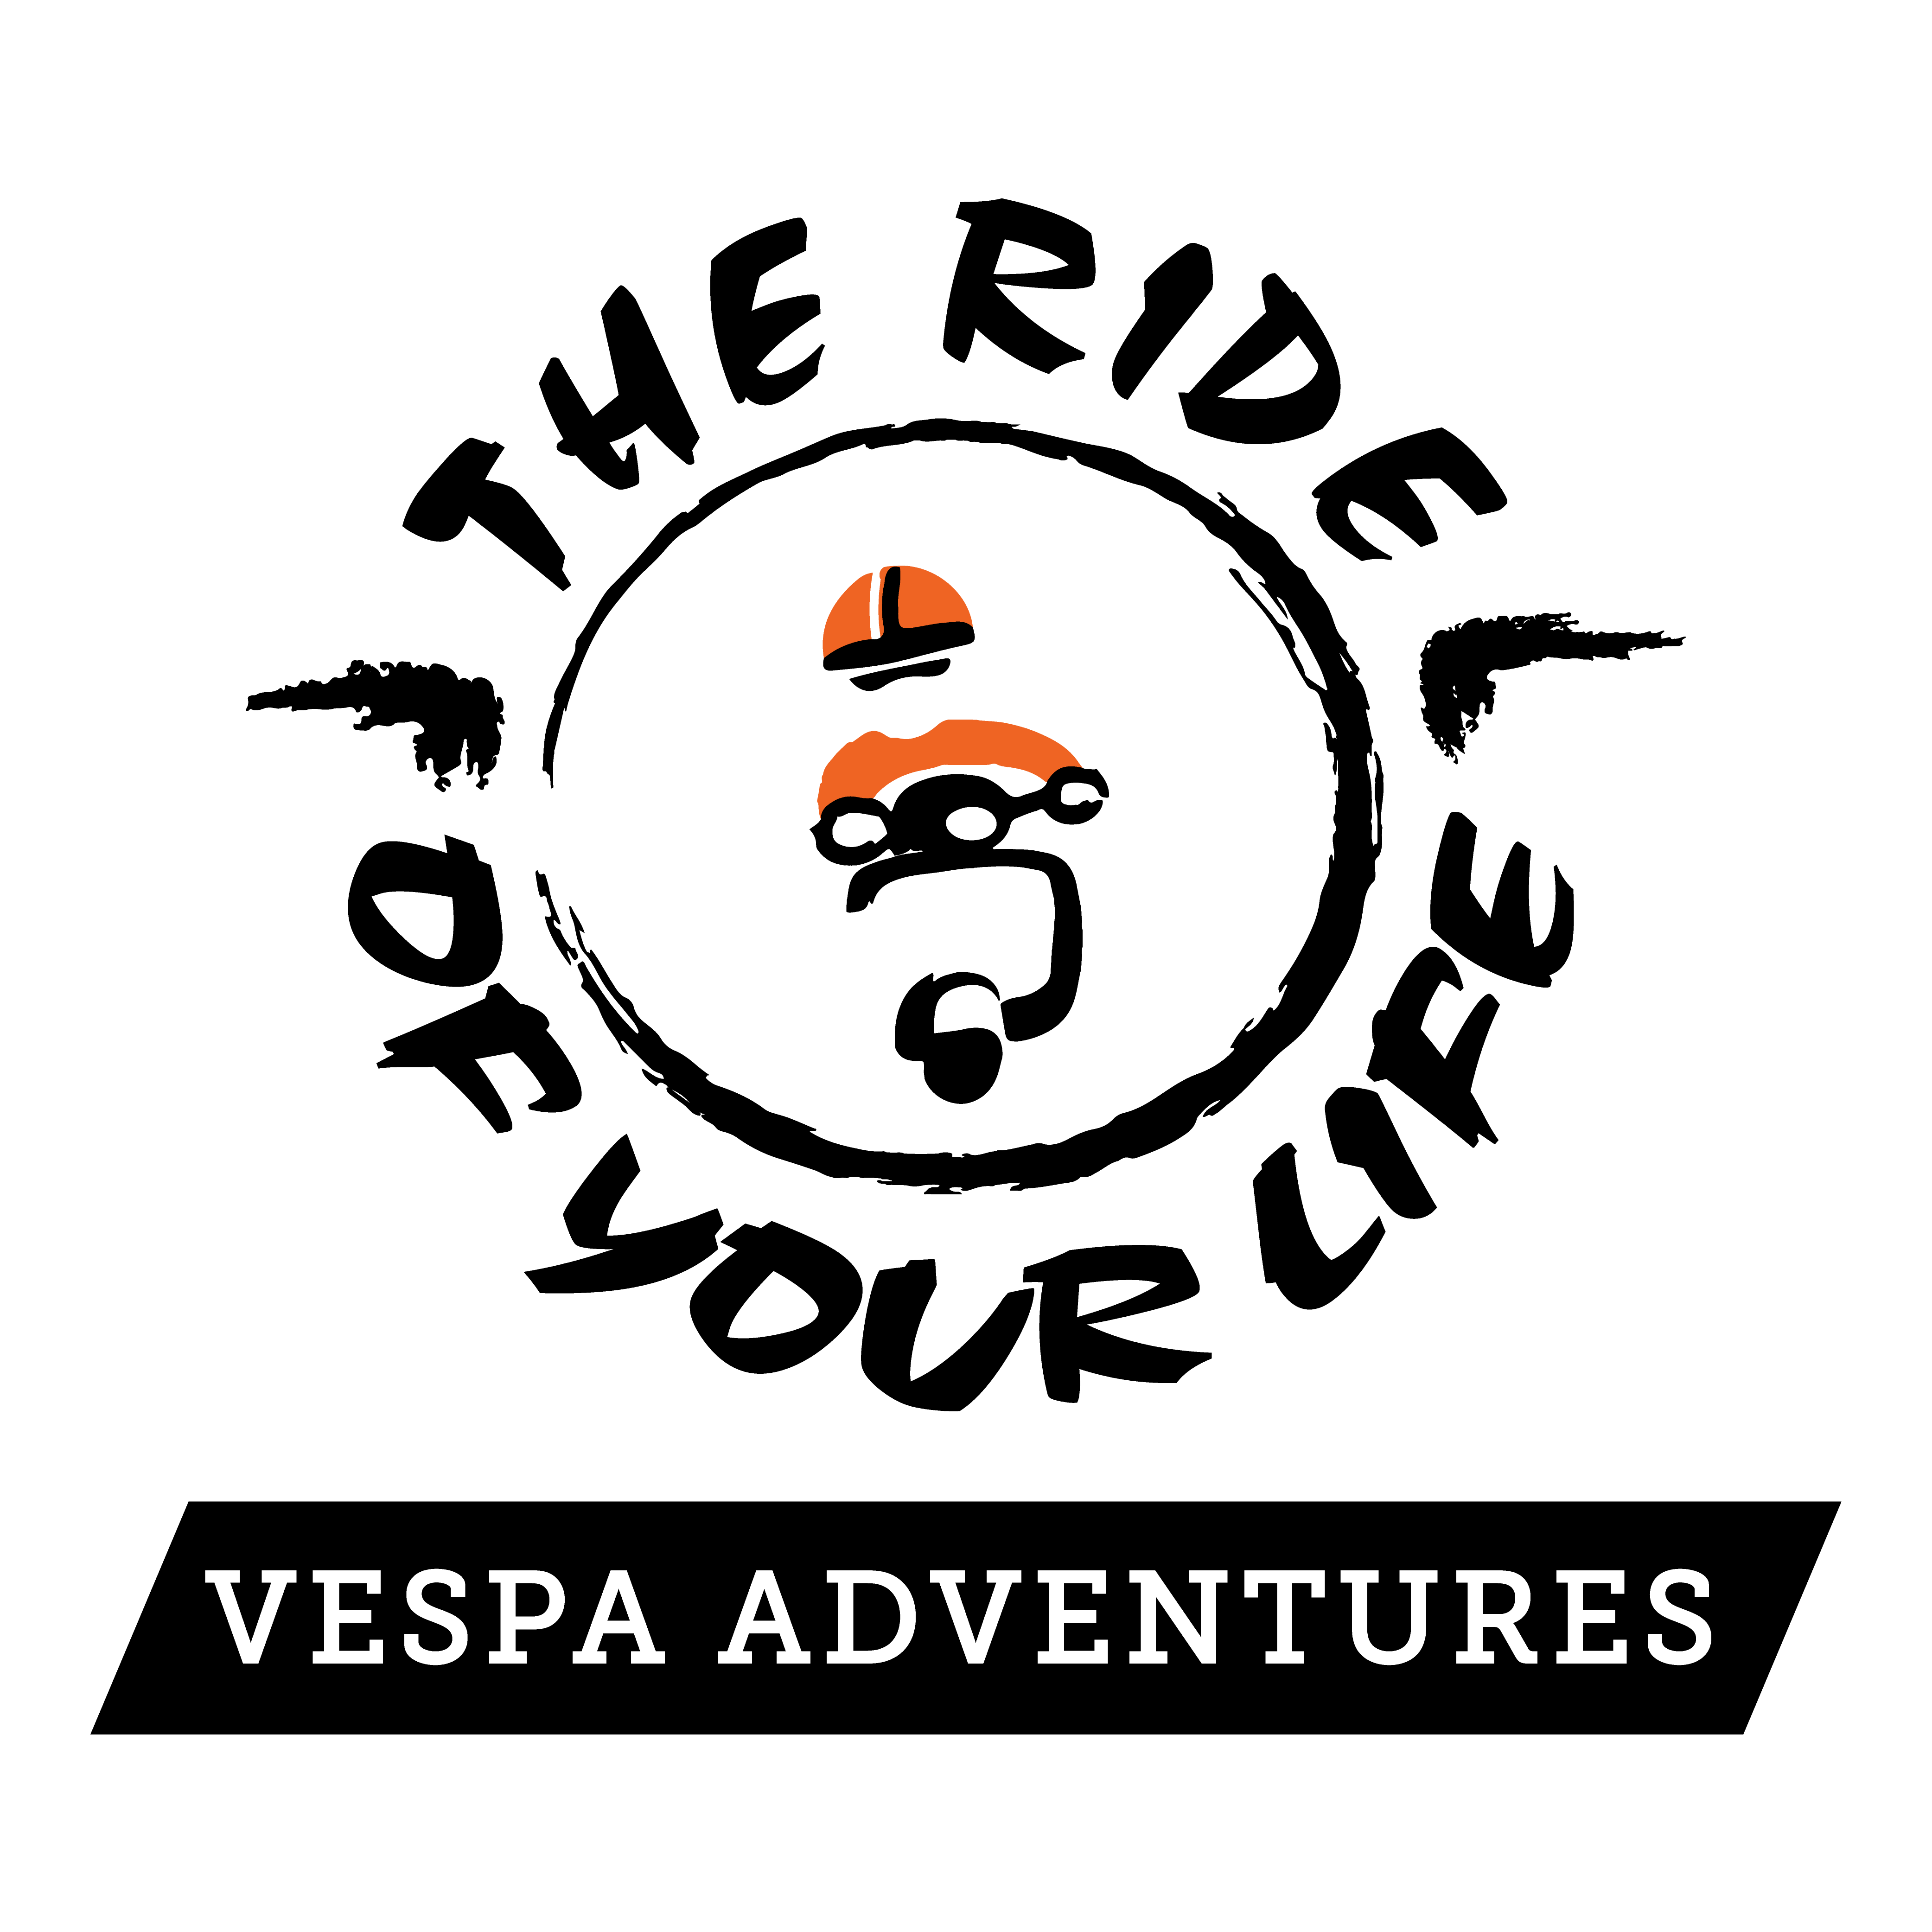 Vespa Adventures